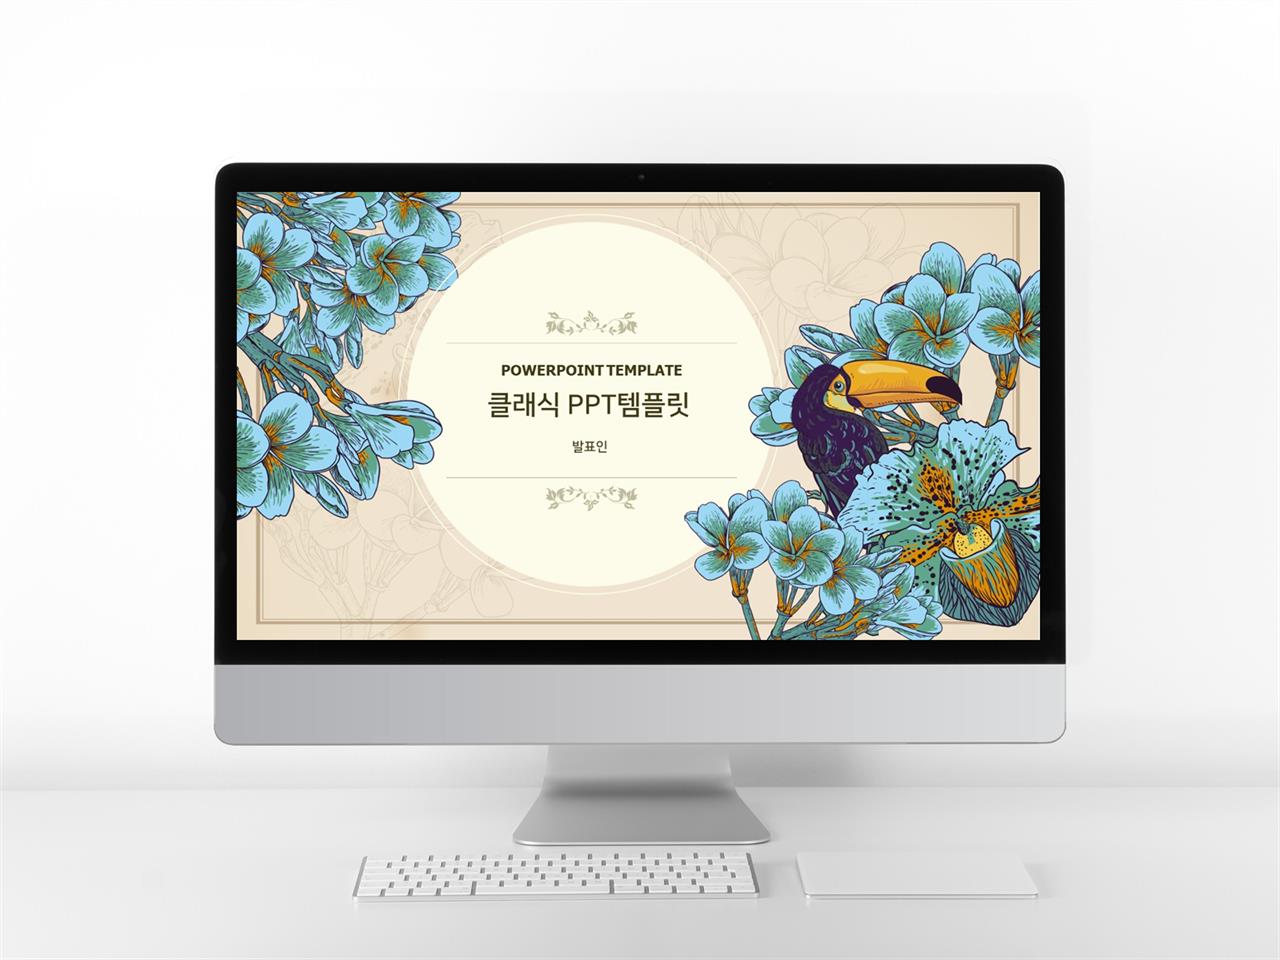 꽃과 동식물 주제 파랑색 클래식한 다양한 주제에 어울리는 POWERPOINT서식 디자인 미리보기